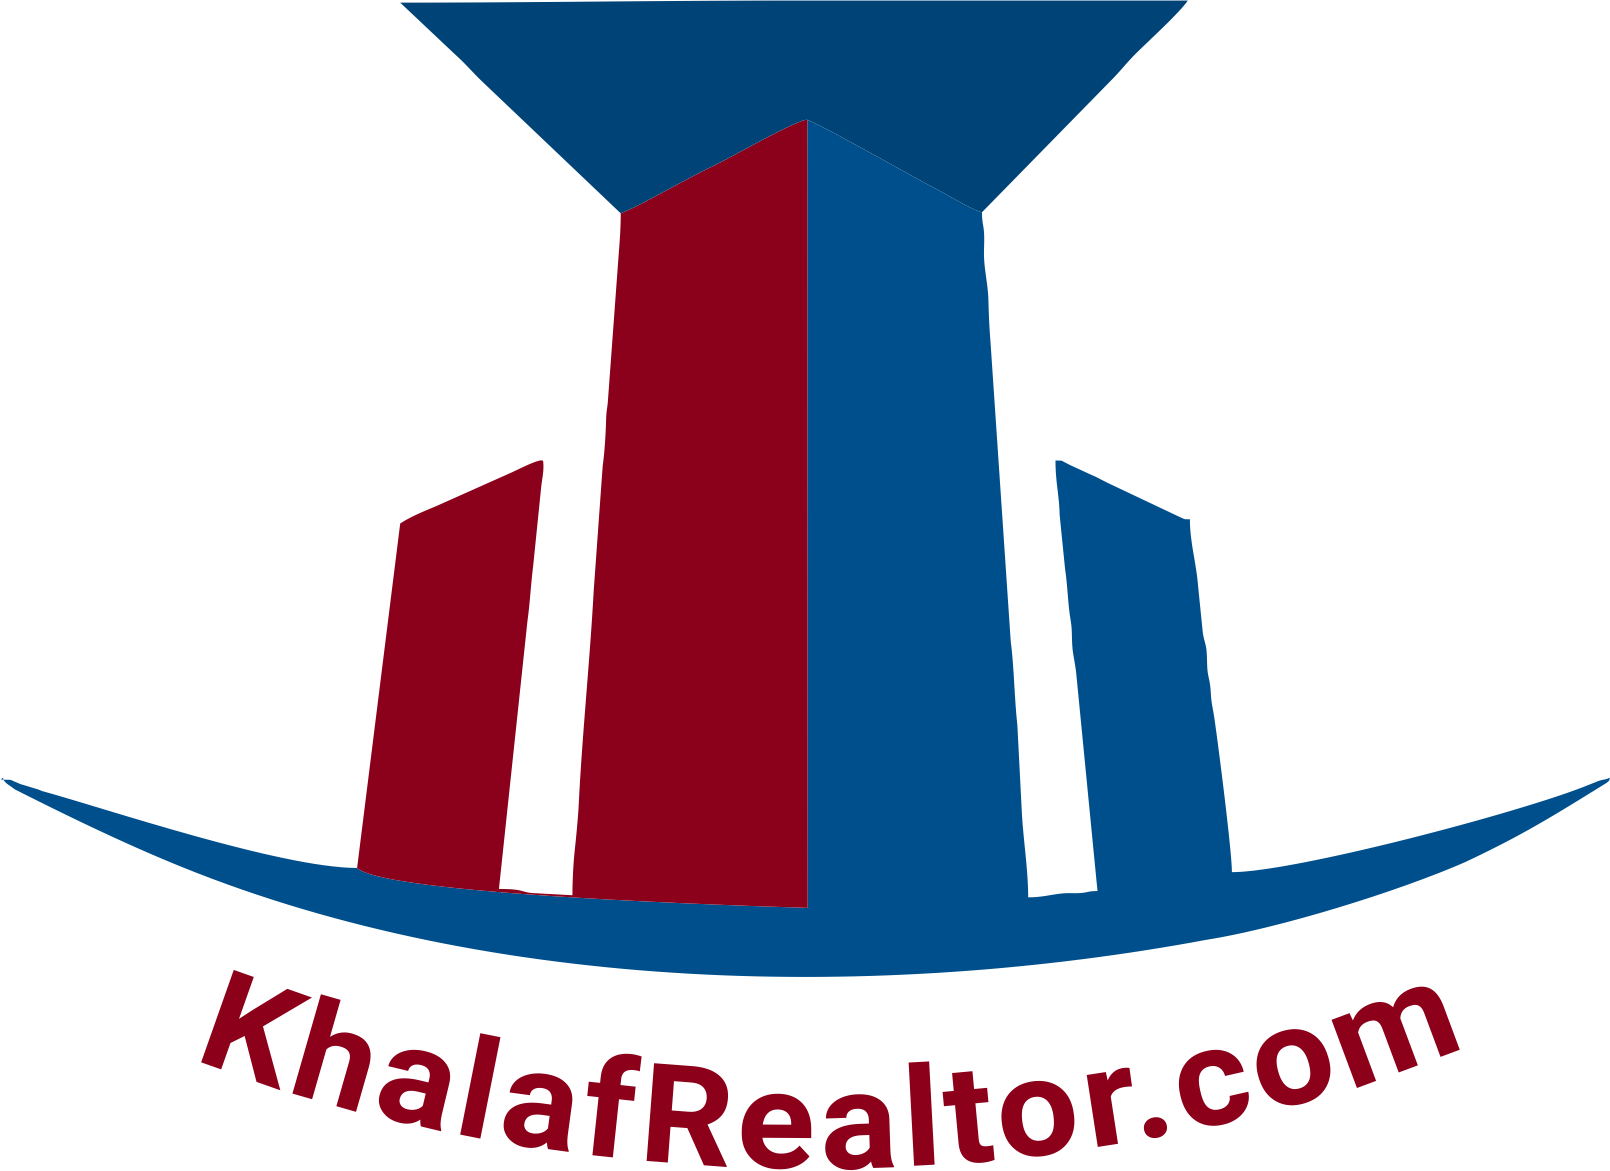 Khalaf Realtor logo website - red